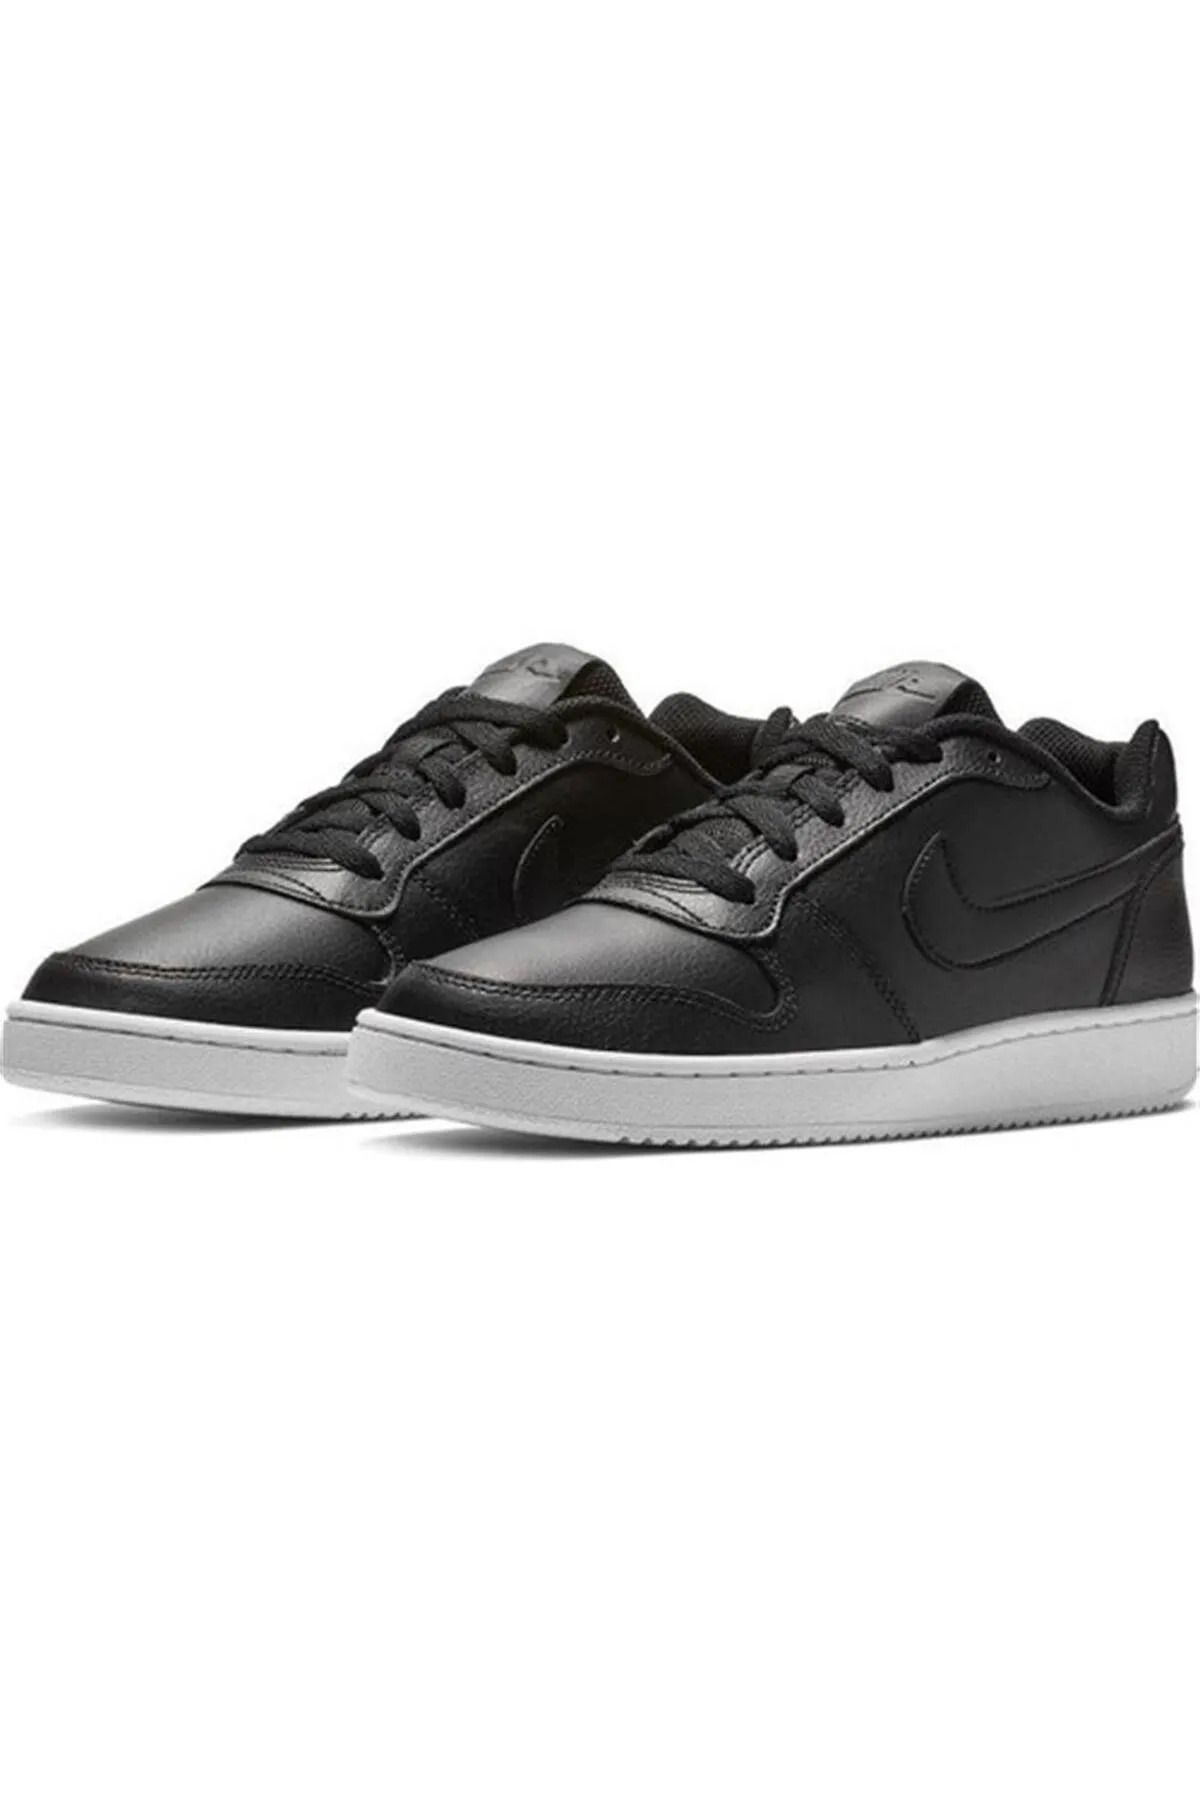 Nike Unısex Siyah Günlük Yürüyüş Ayakkabı-Aq1779001.